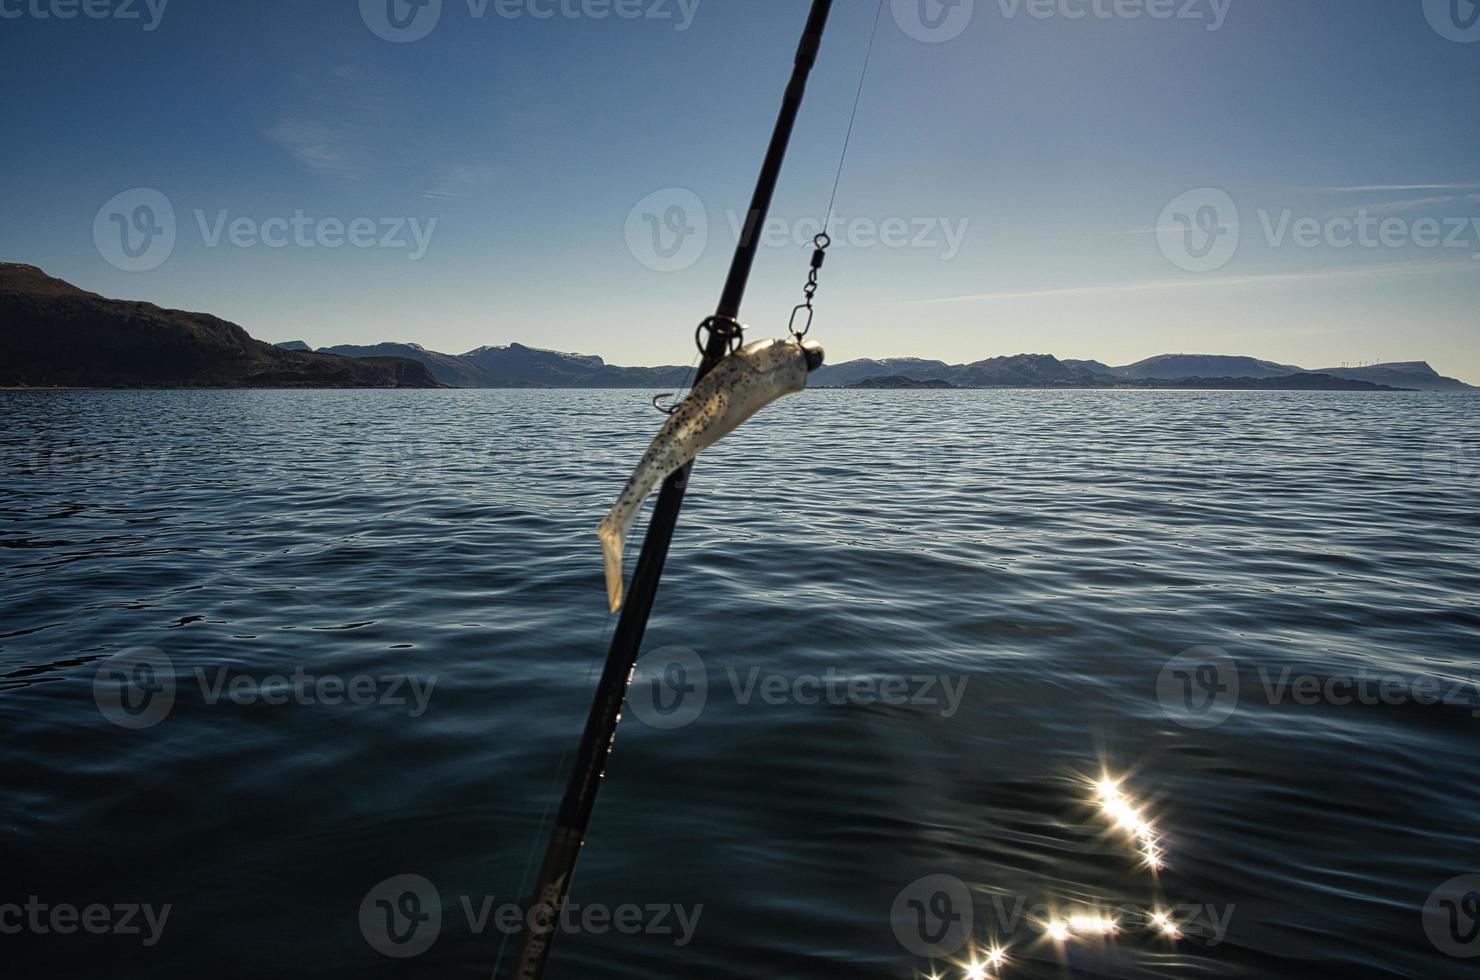 férias de pesca em selje noruega. vara e molinete estão prontos para pescar. um paraíso para os pescadores foto